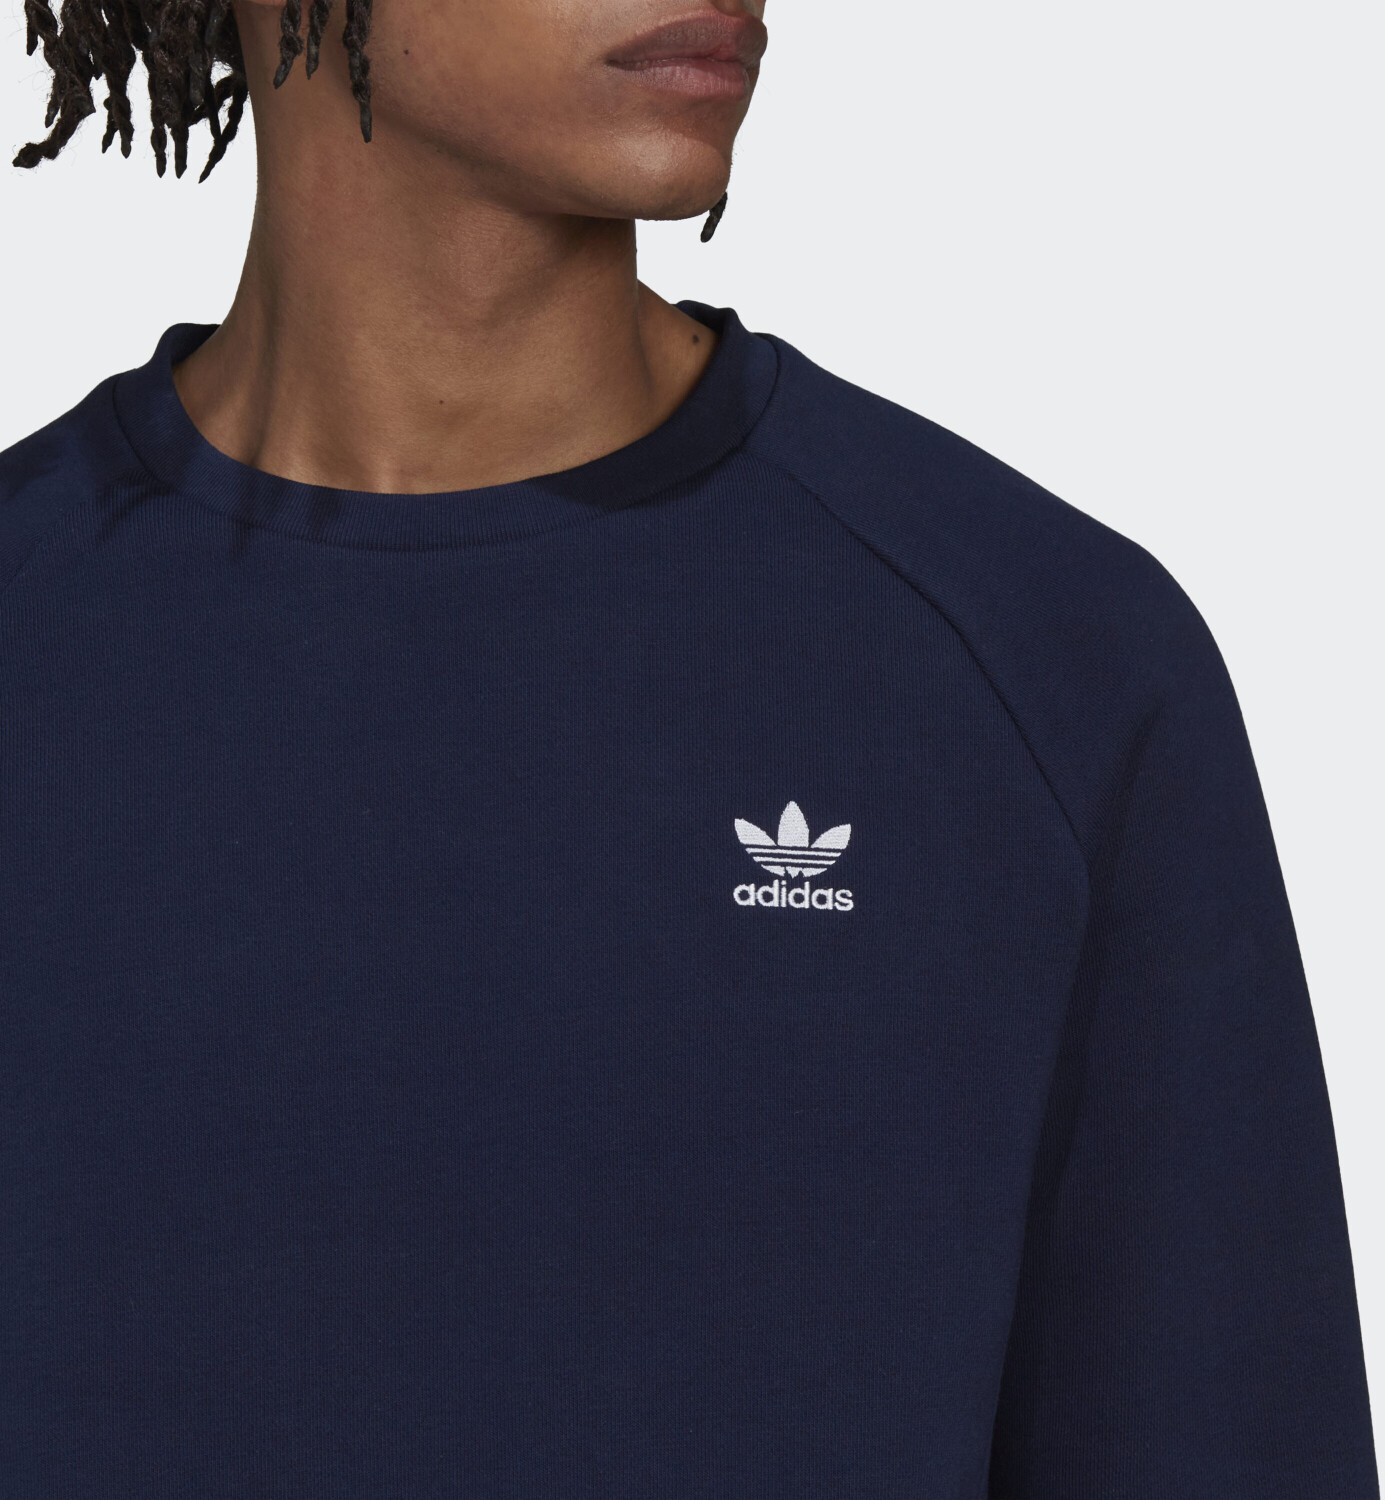 Adidas Originals Adicolor Essentials Preisvergleich | bei (HK0089) € Crewneck Trefoil night ab 54,99 Sweatshirt indigo